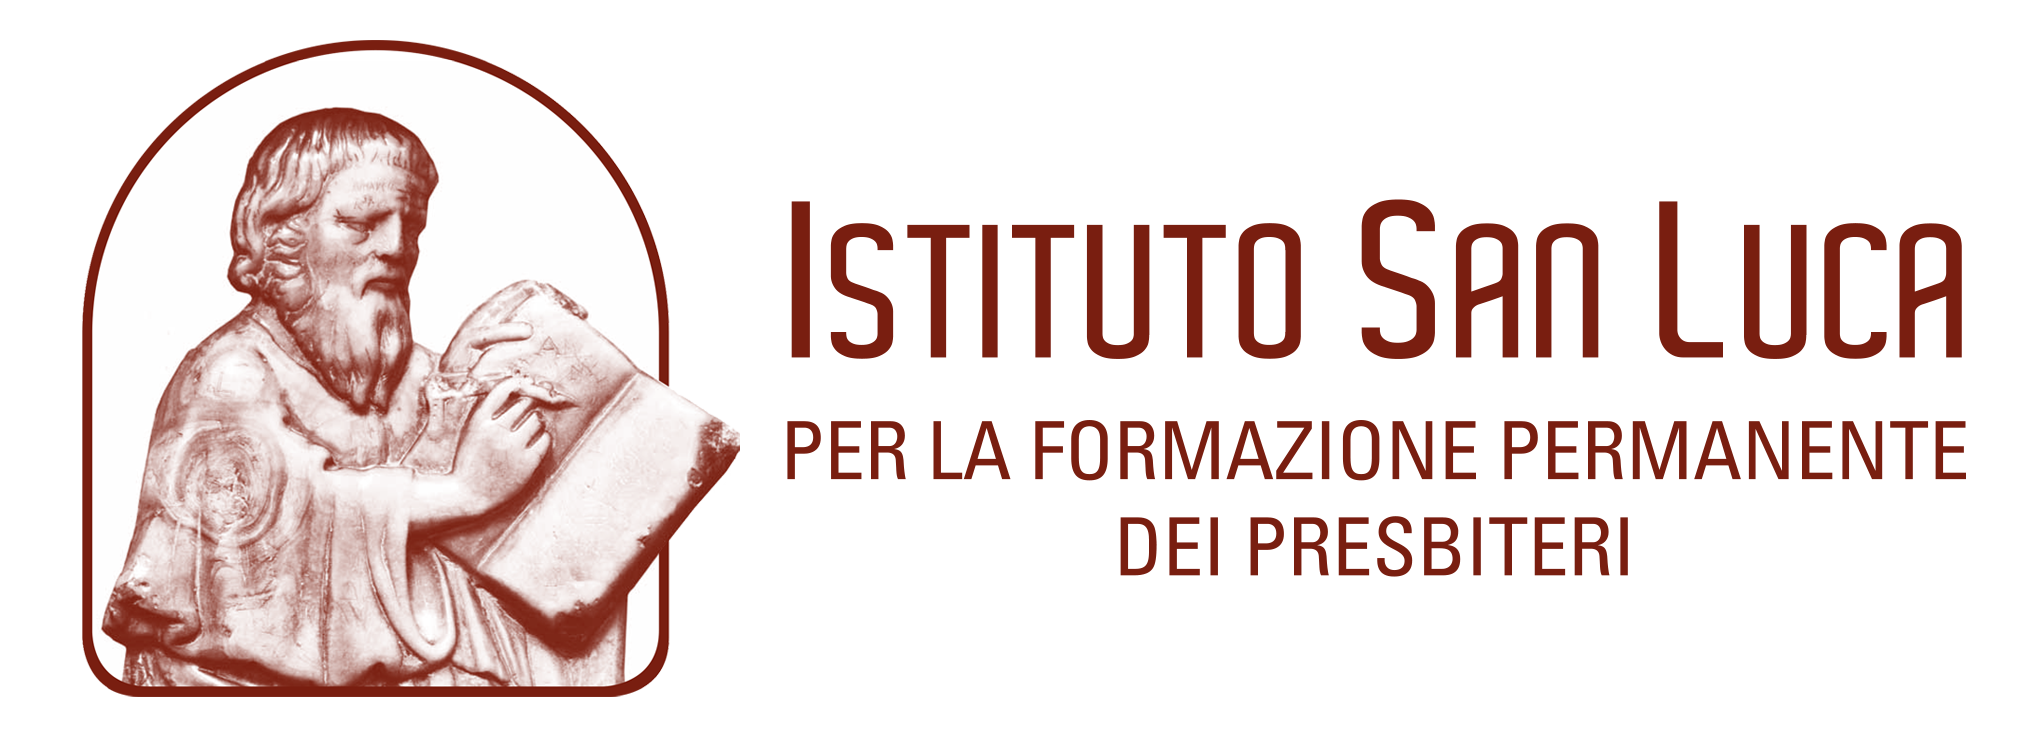 Istituto San Luca